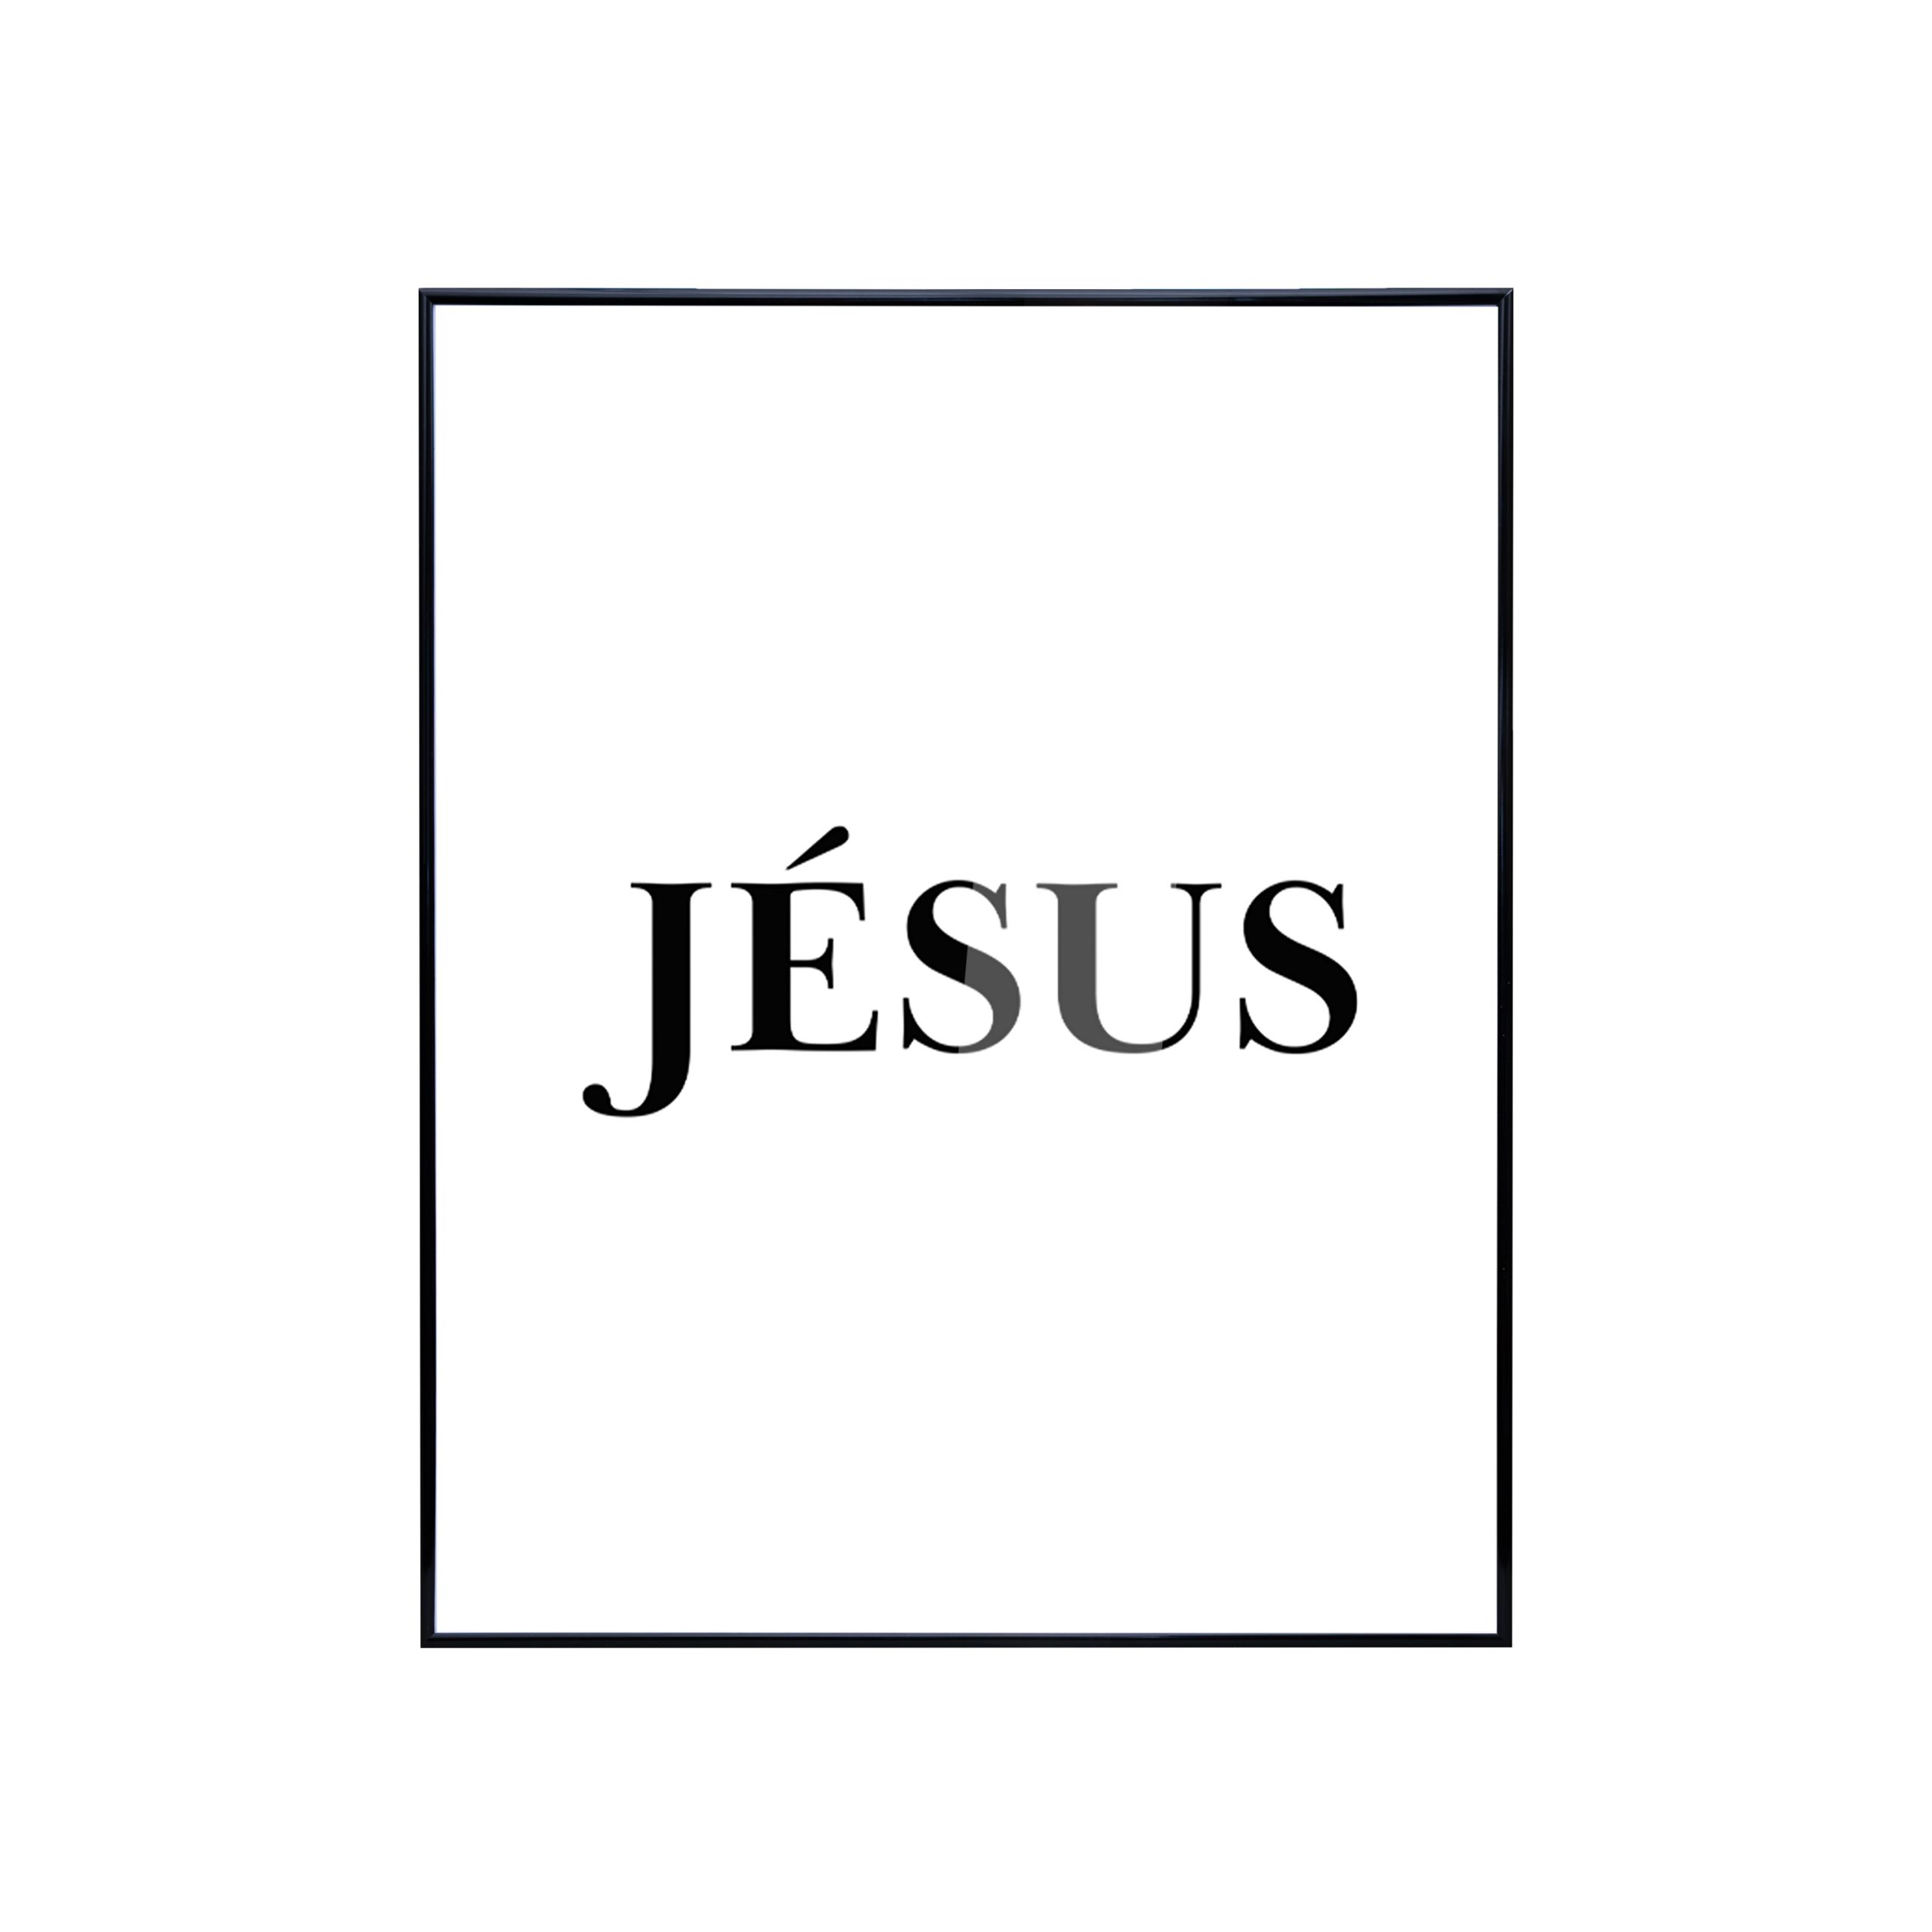 Jesus_Frontal_JPG